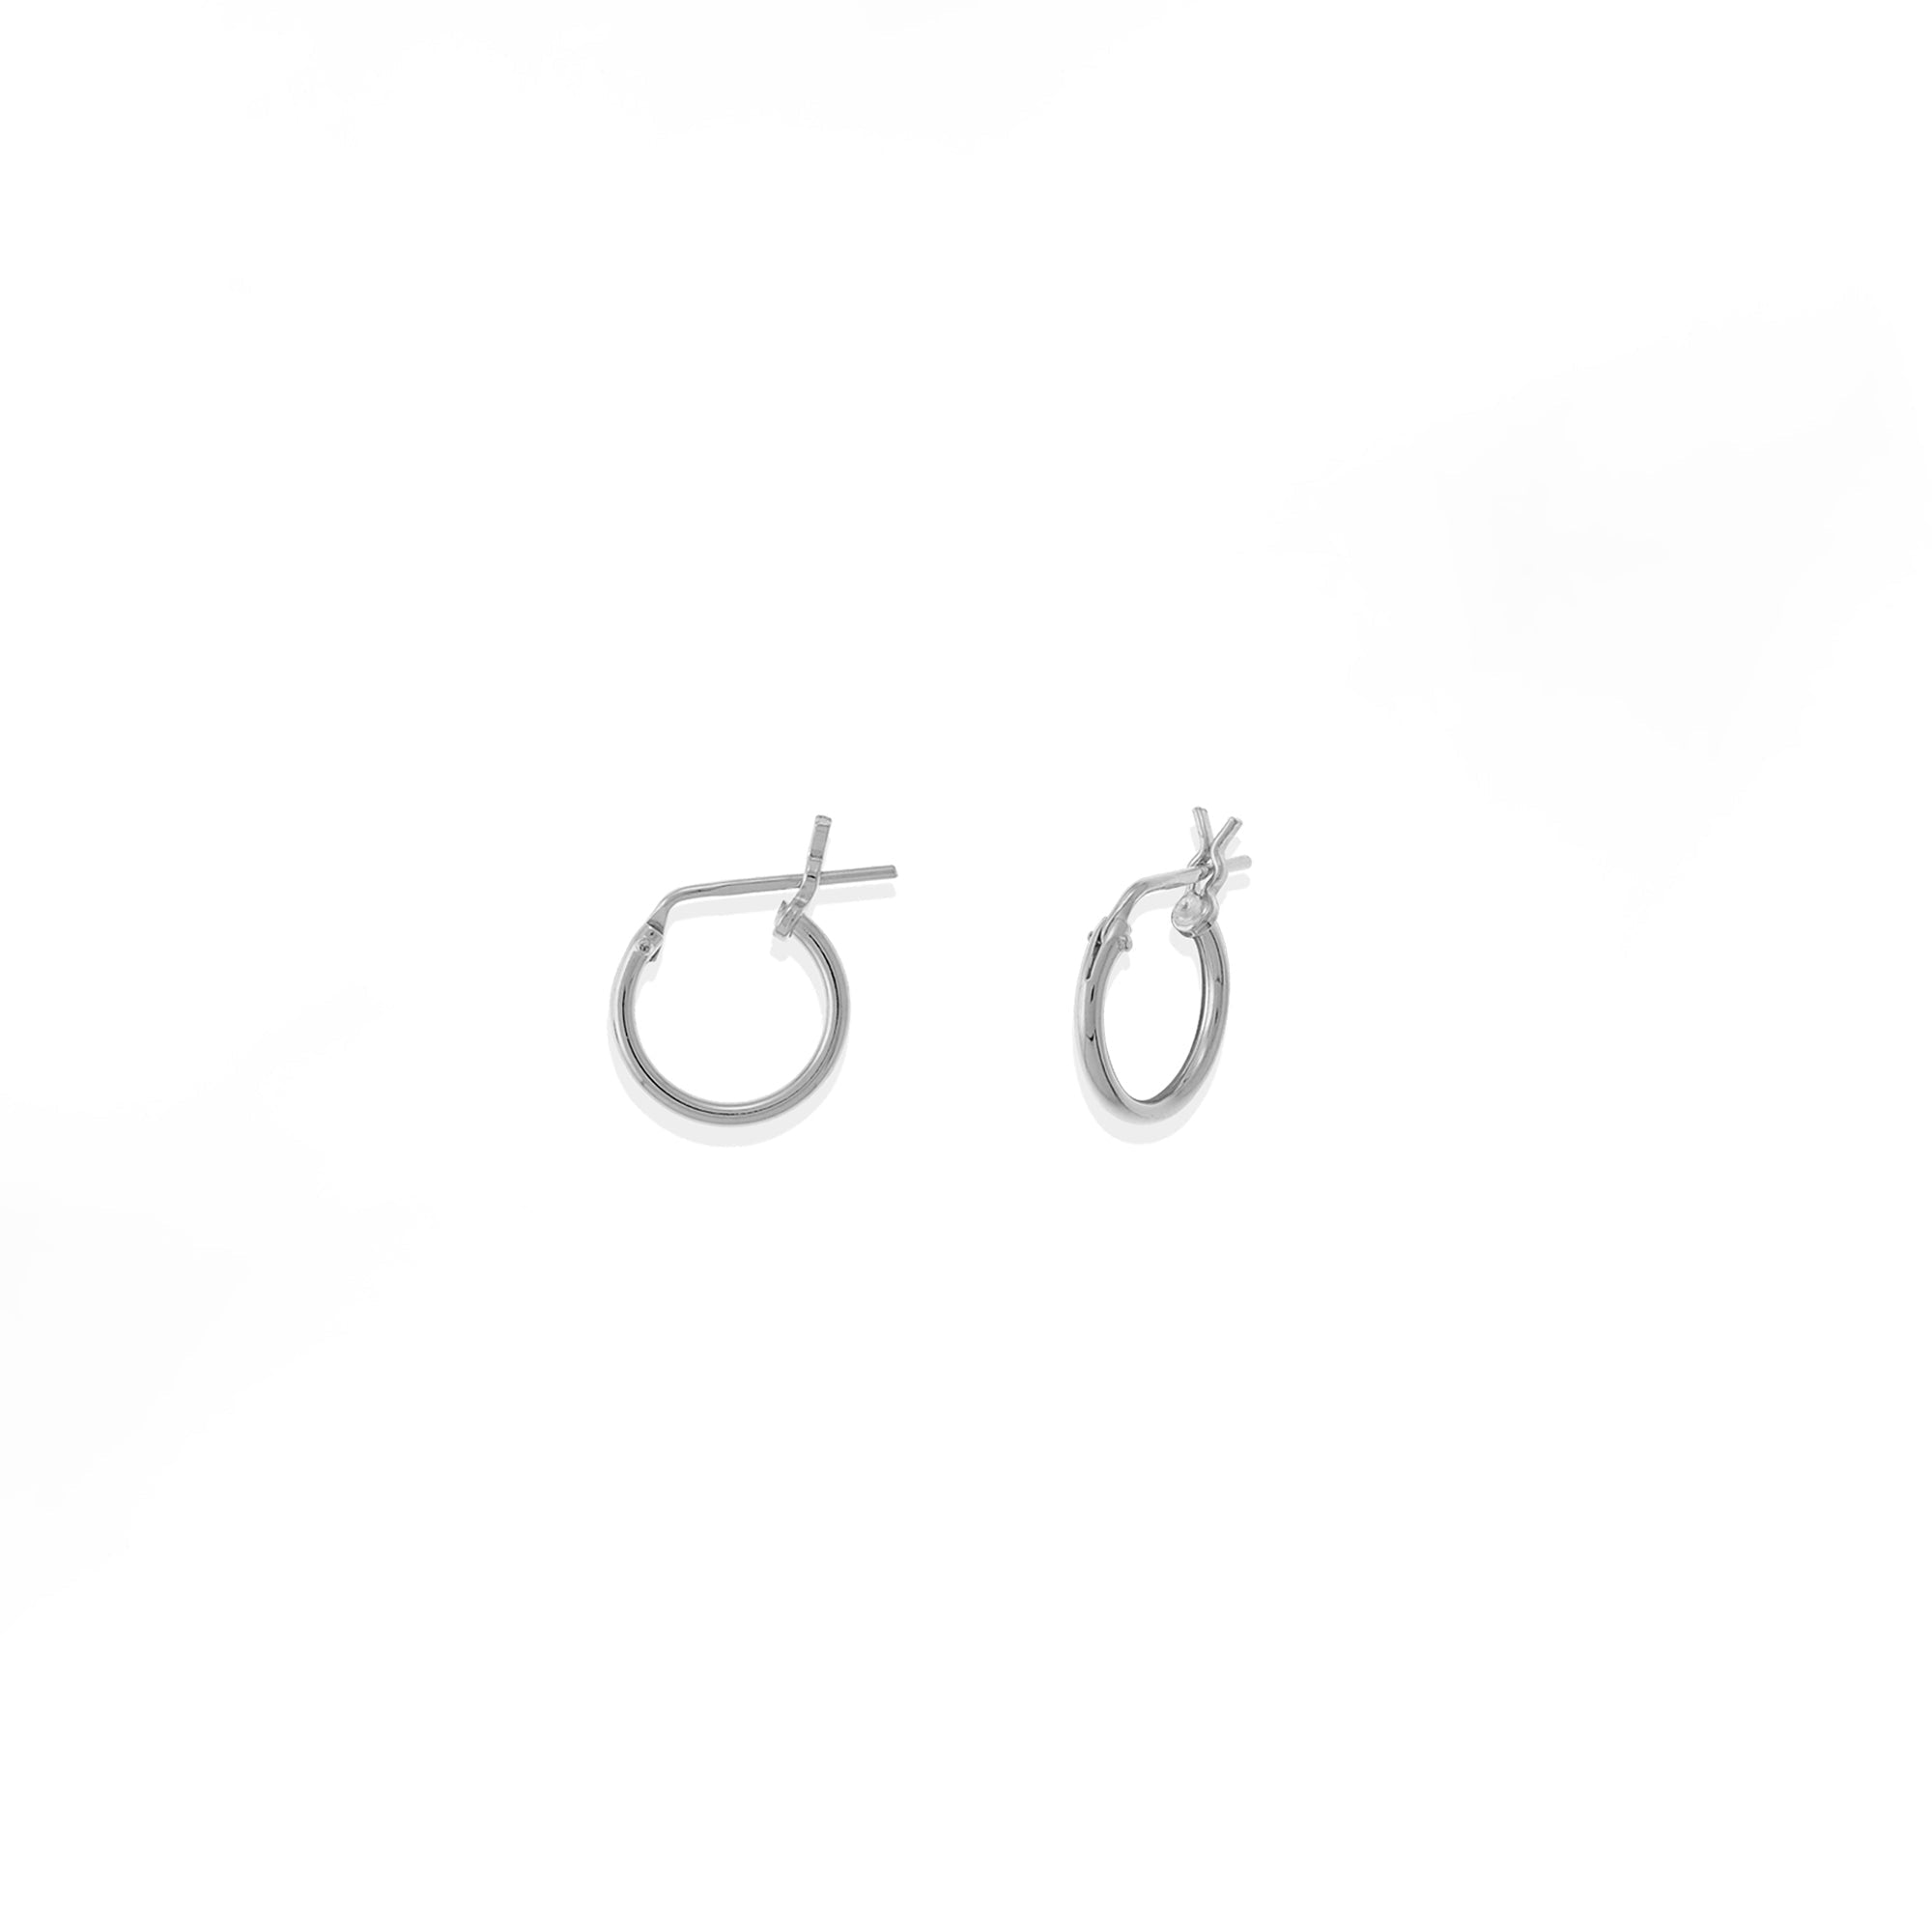 Boma Jewelry Earrings Sterling Silver / 0.3" Belle Hoops